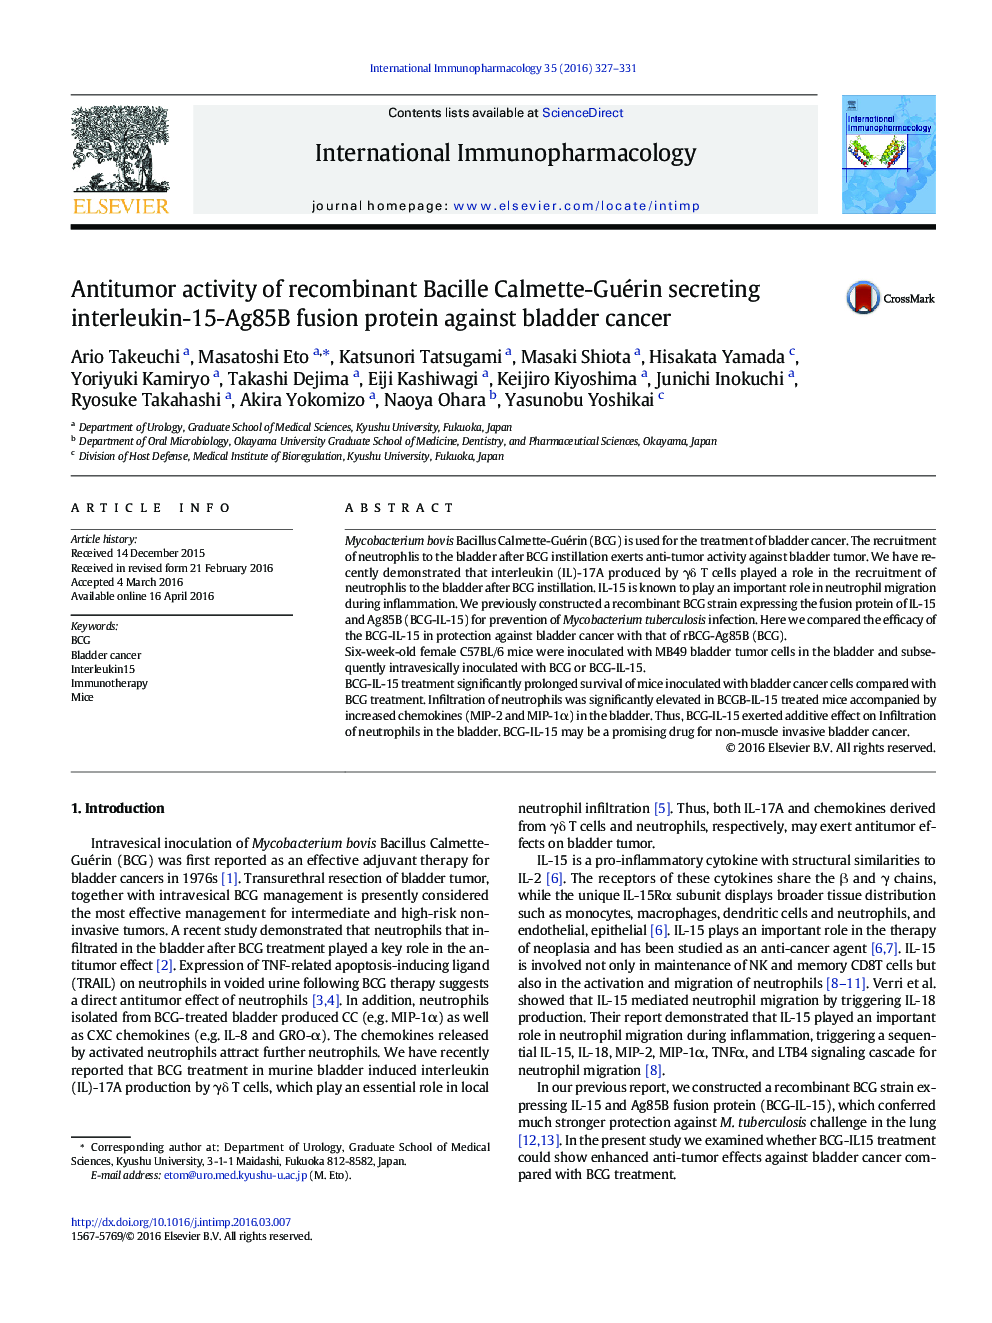 فعالیت ضدتوموری پروتئین ترکیبی اینترلوکین 15-Ag85B ترشح کننده Calmette-Guérin باسیل نوترکیب در برابر سرطان مثانه